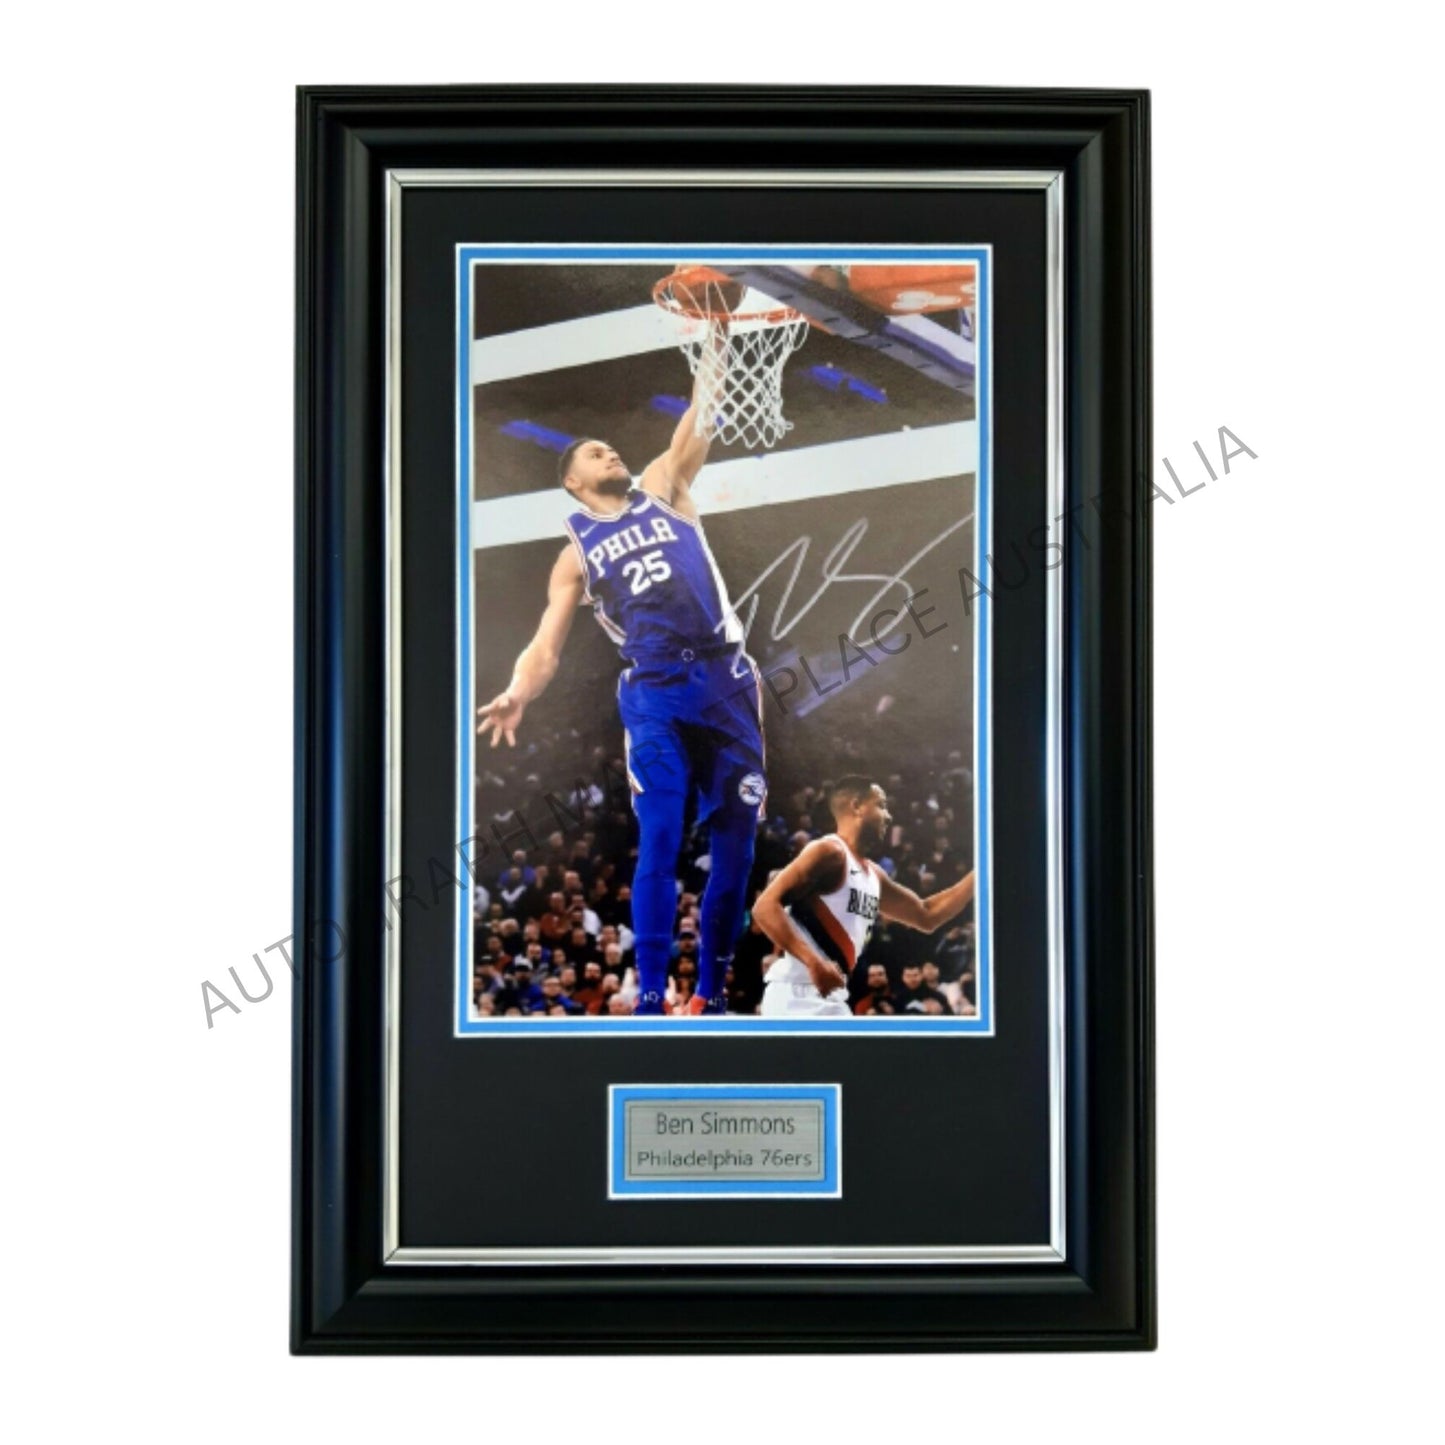 Ben Simmons Philadelphia 76ers Action Photo - Signed Framed Memorabilia